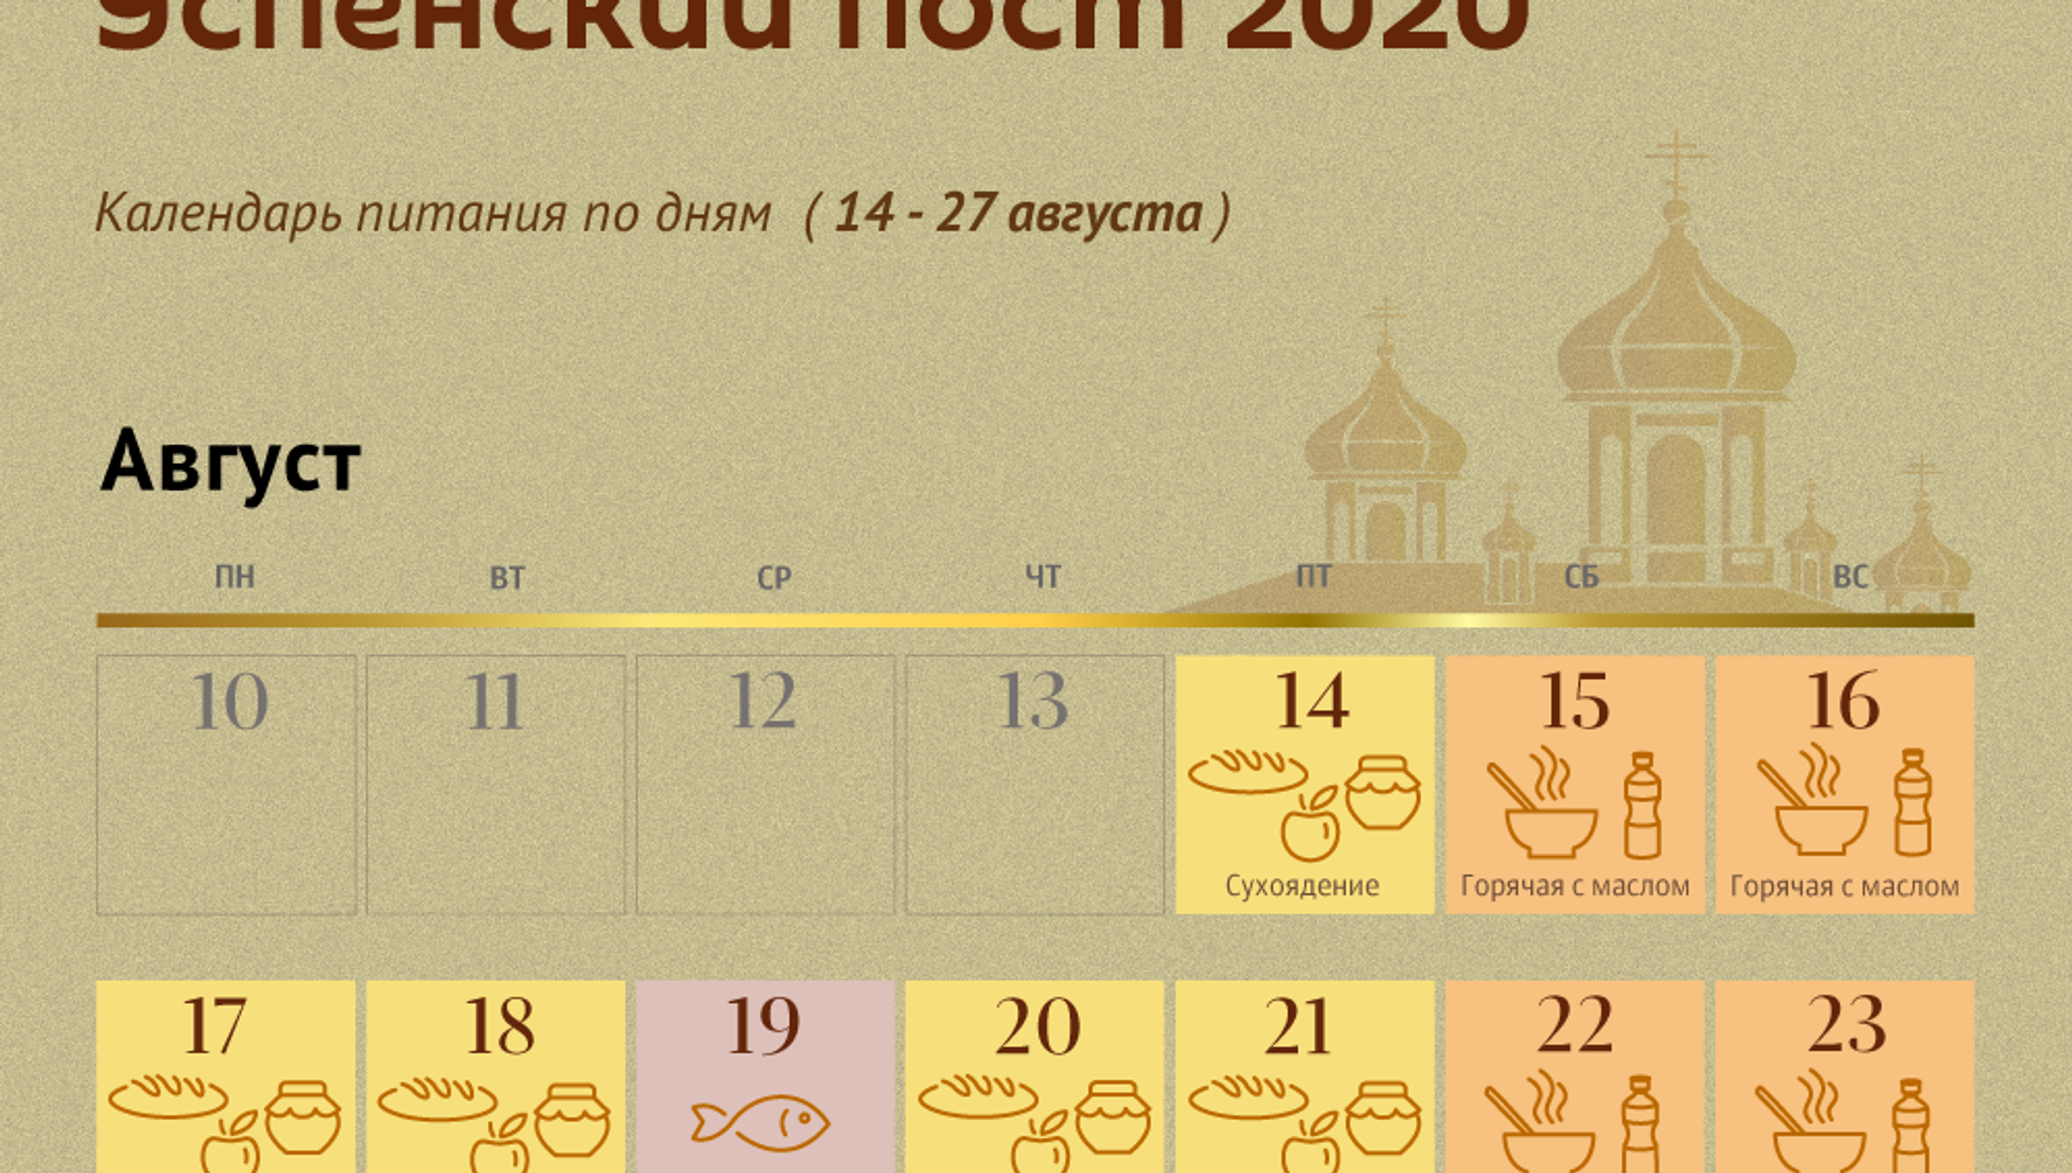 28 август 2021. Пост в августе. Успенский пост в 2022. Календарь поста август. Успенский пост 2020 календарь питания по дням.